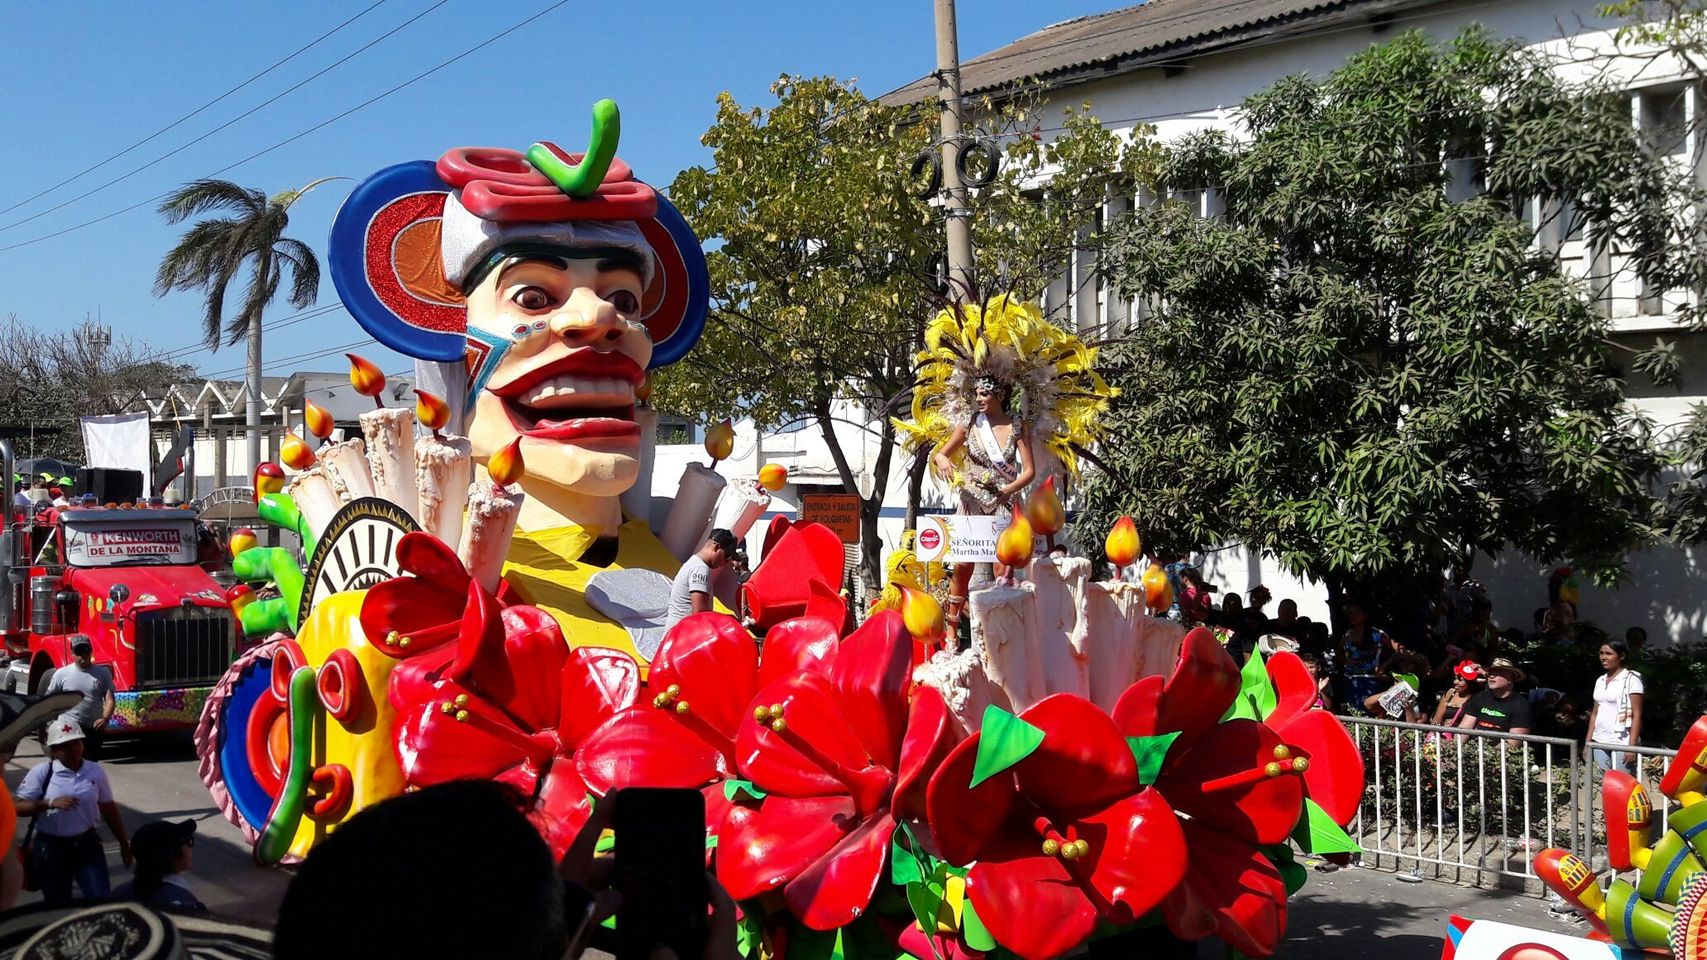 Erleben Sie die lebendige Kultur des Karnevals von Barranquilla.